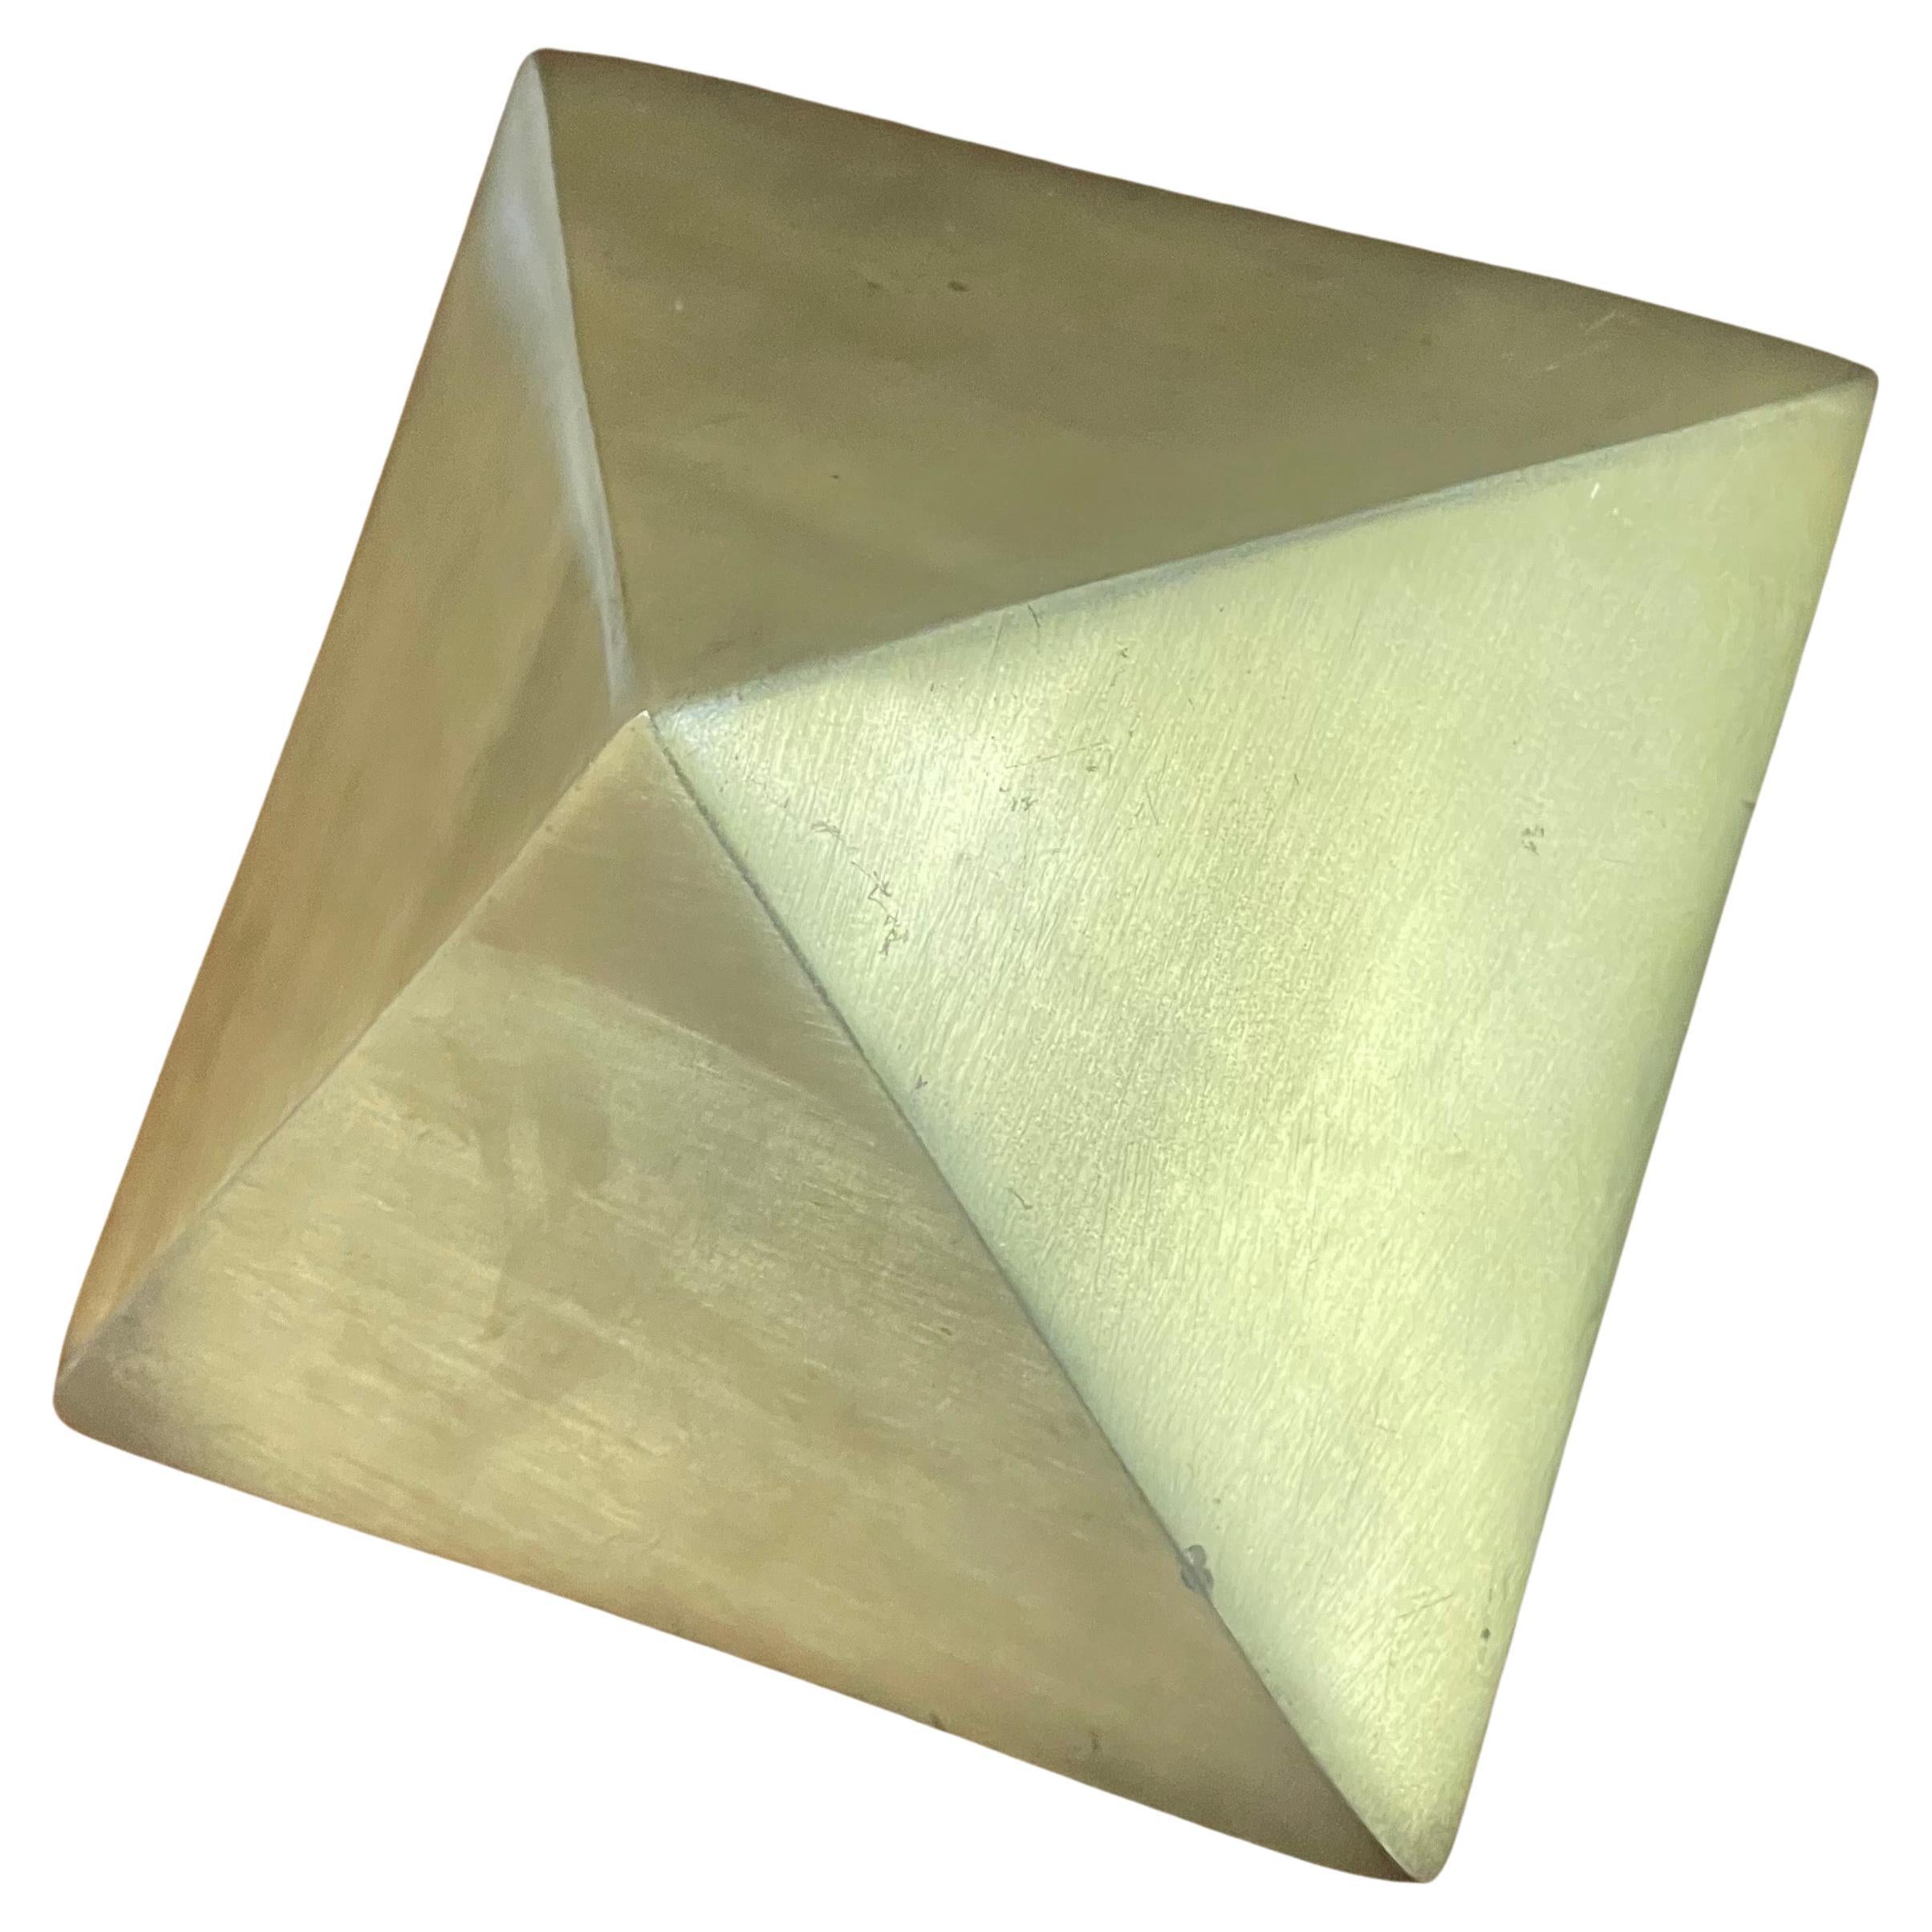 Presse-papier vintage en laiton en forme de diamant